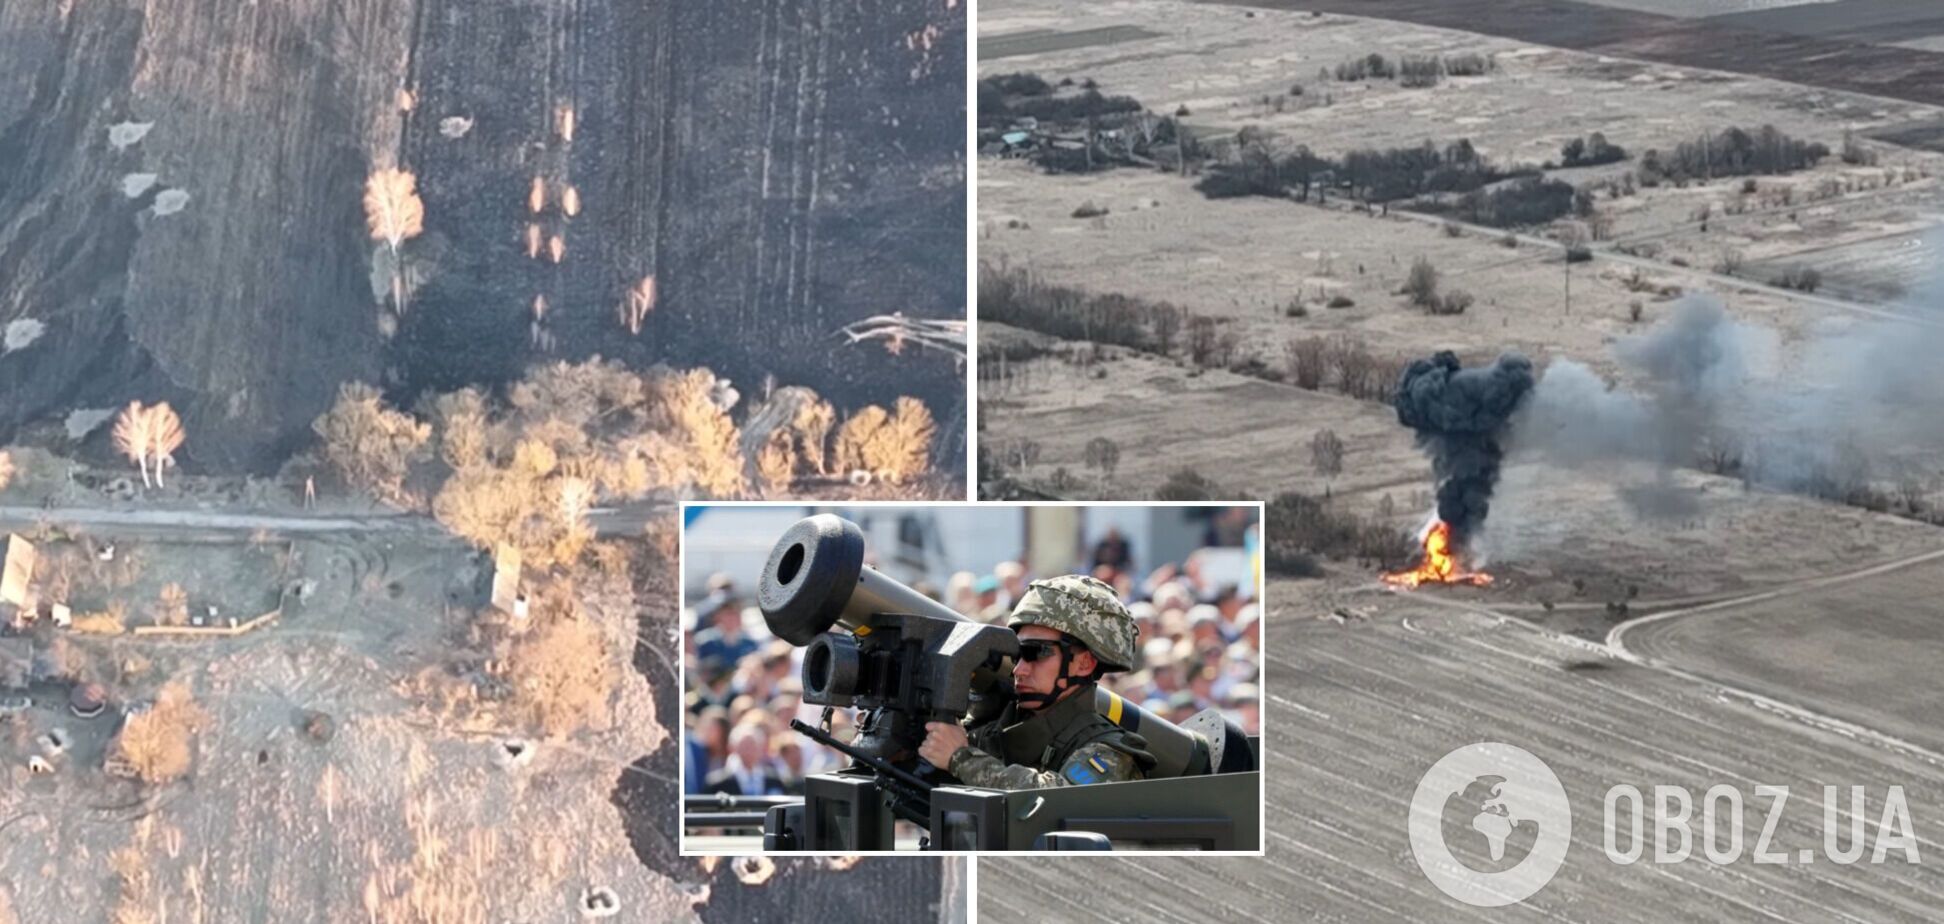 Аэроразведка показала, как ВСУ уничтожают российских оккупантов вместе с техникой. Видео